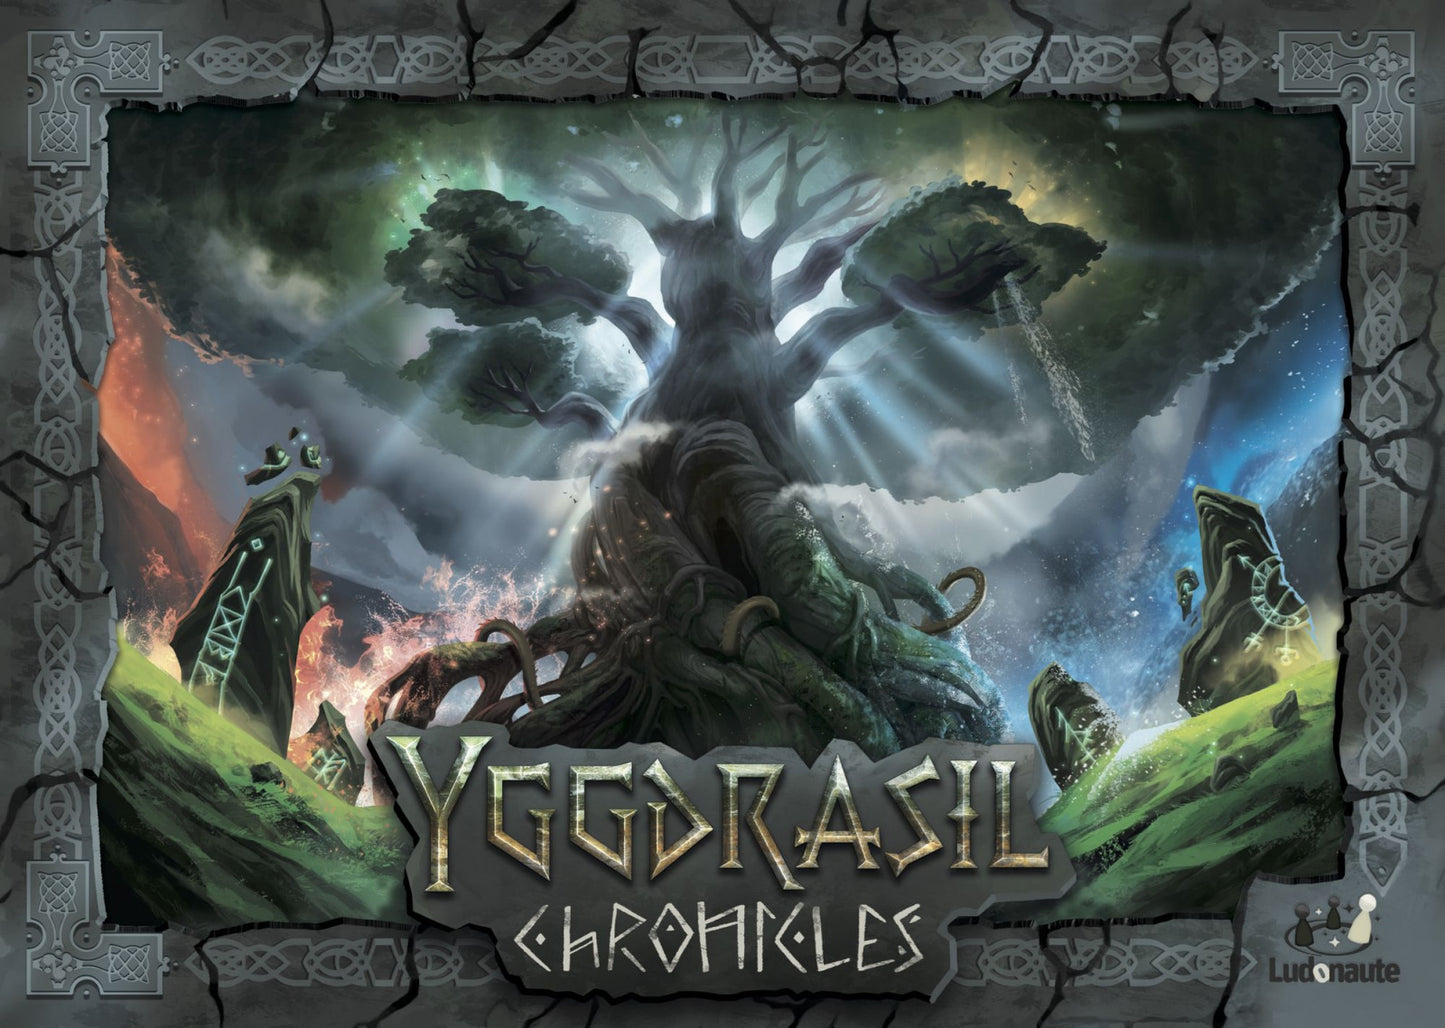 Yggdrasil Chronicles